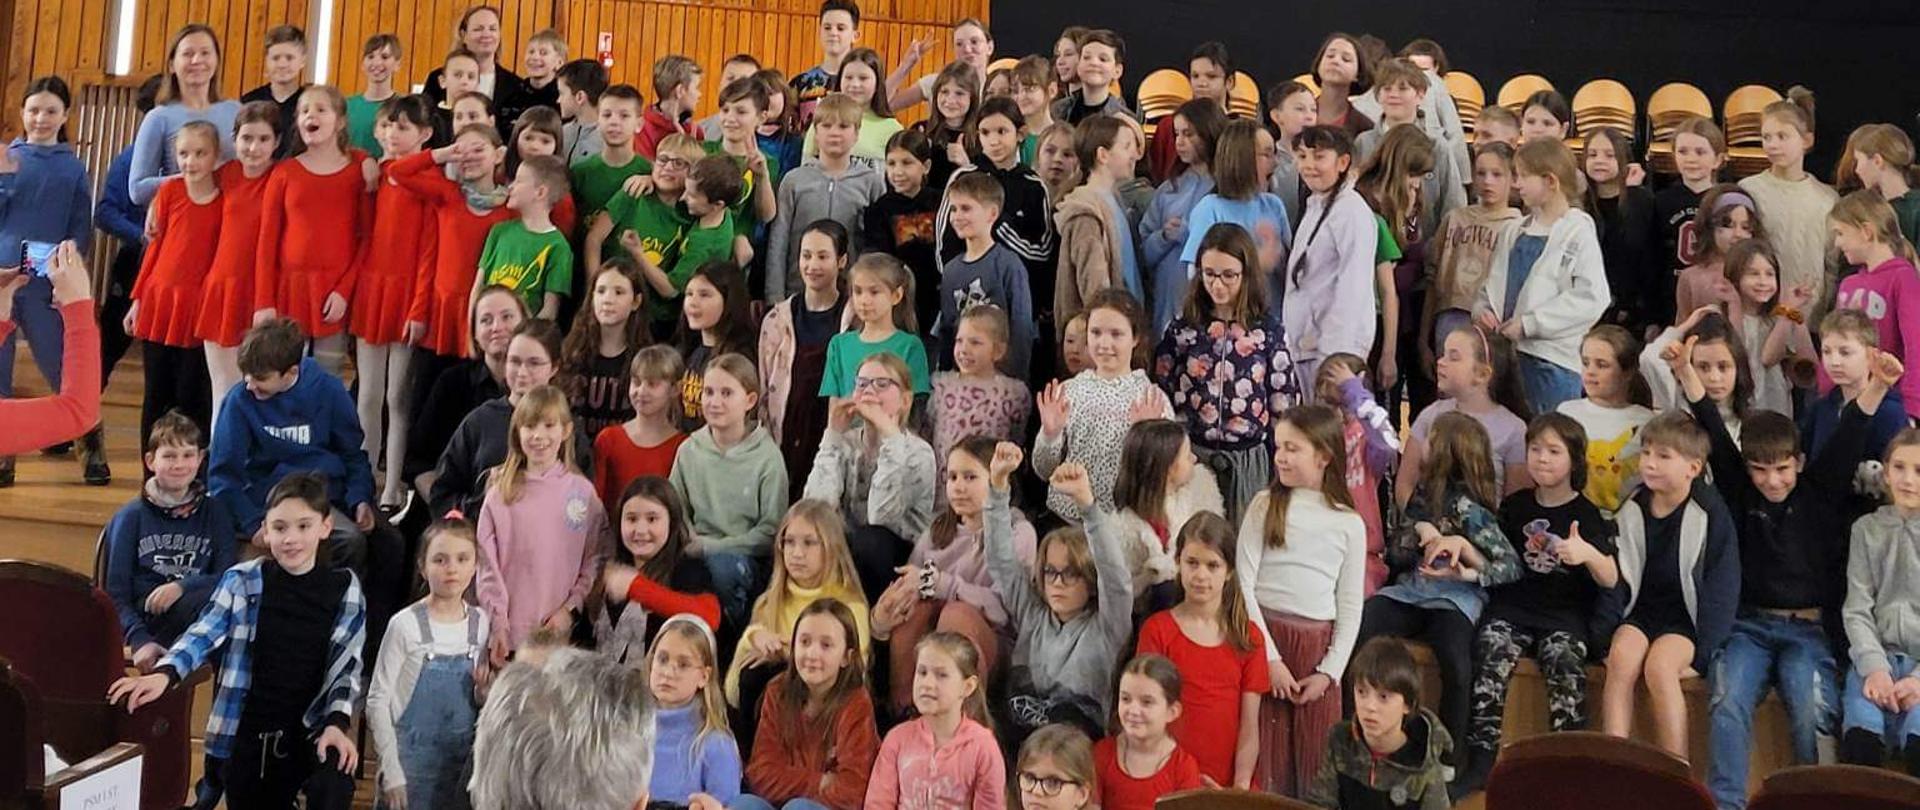 Fotografia przedstawia dużą grupę uczniów siedzących na scenie podczas Warsztatów umuzykalniających